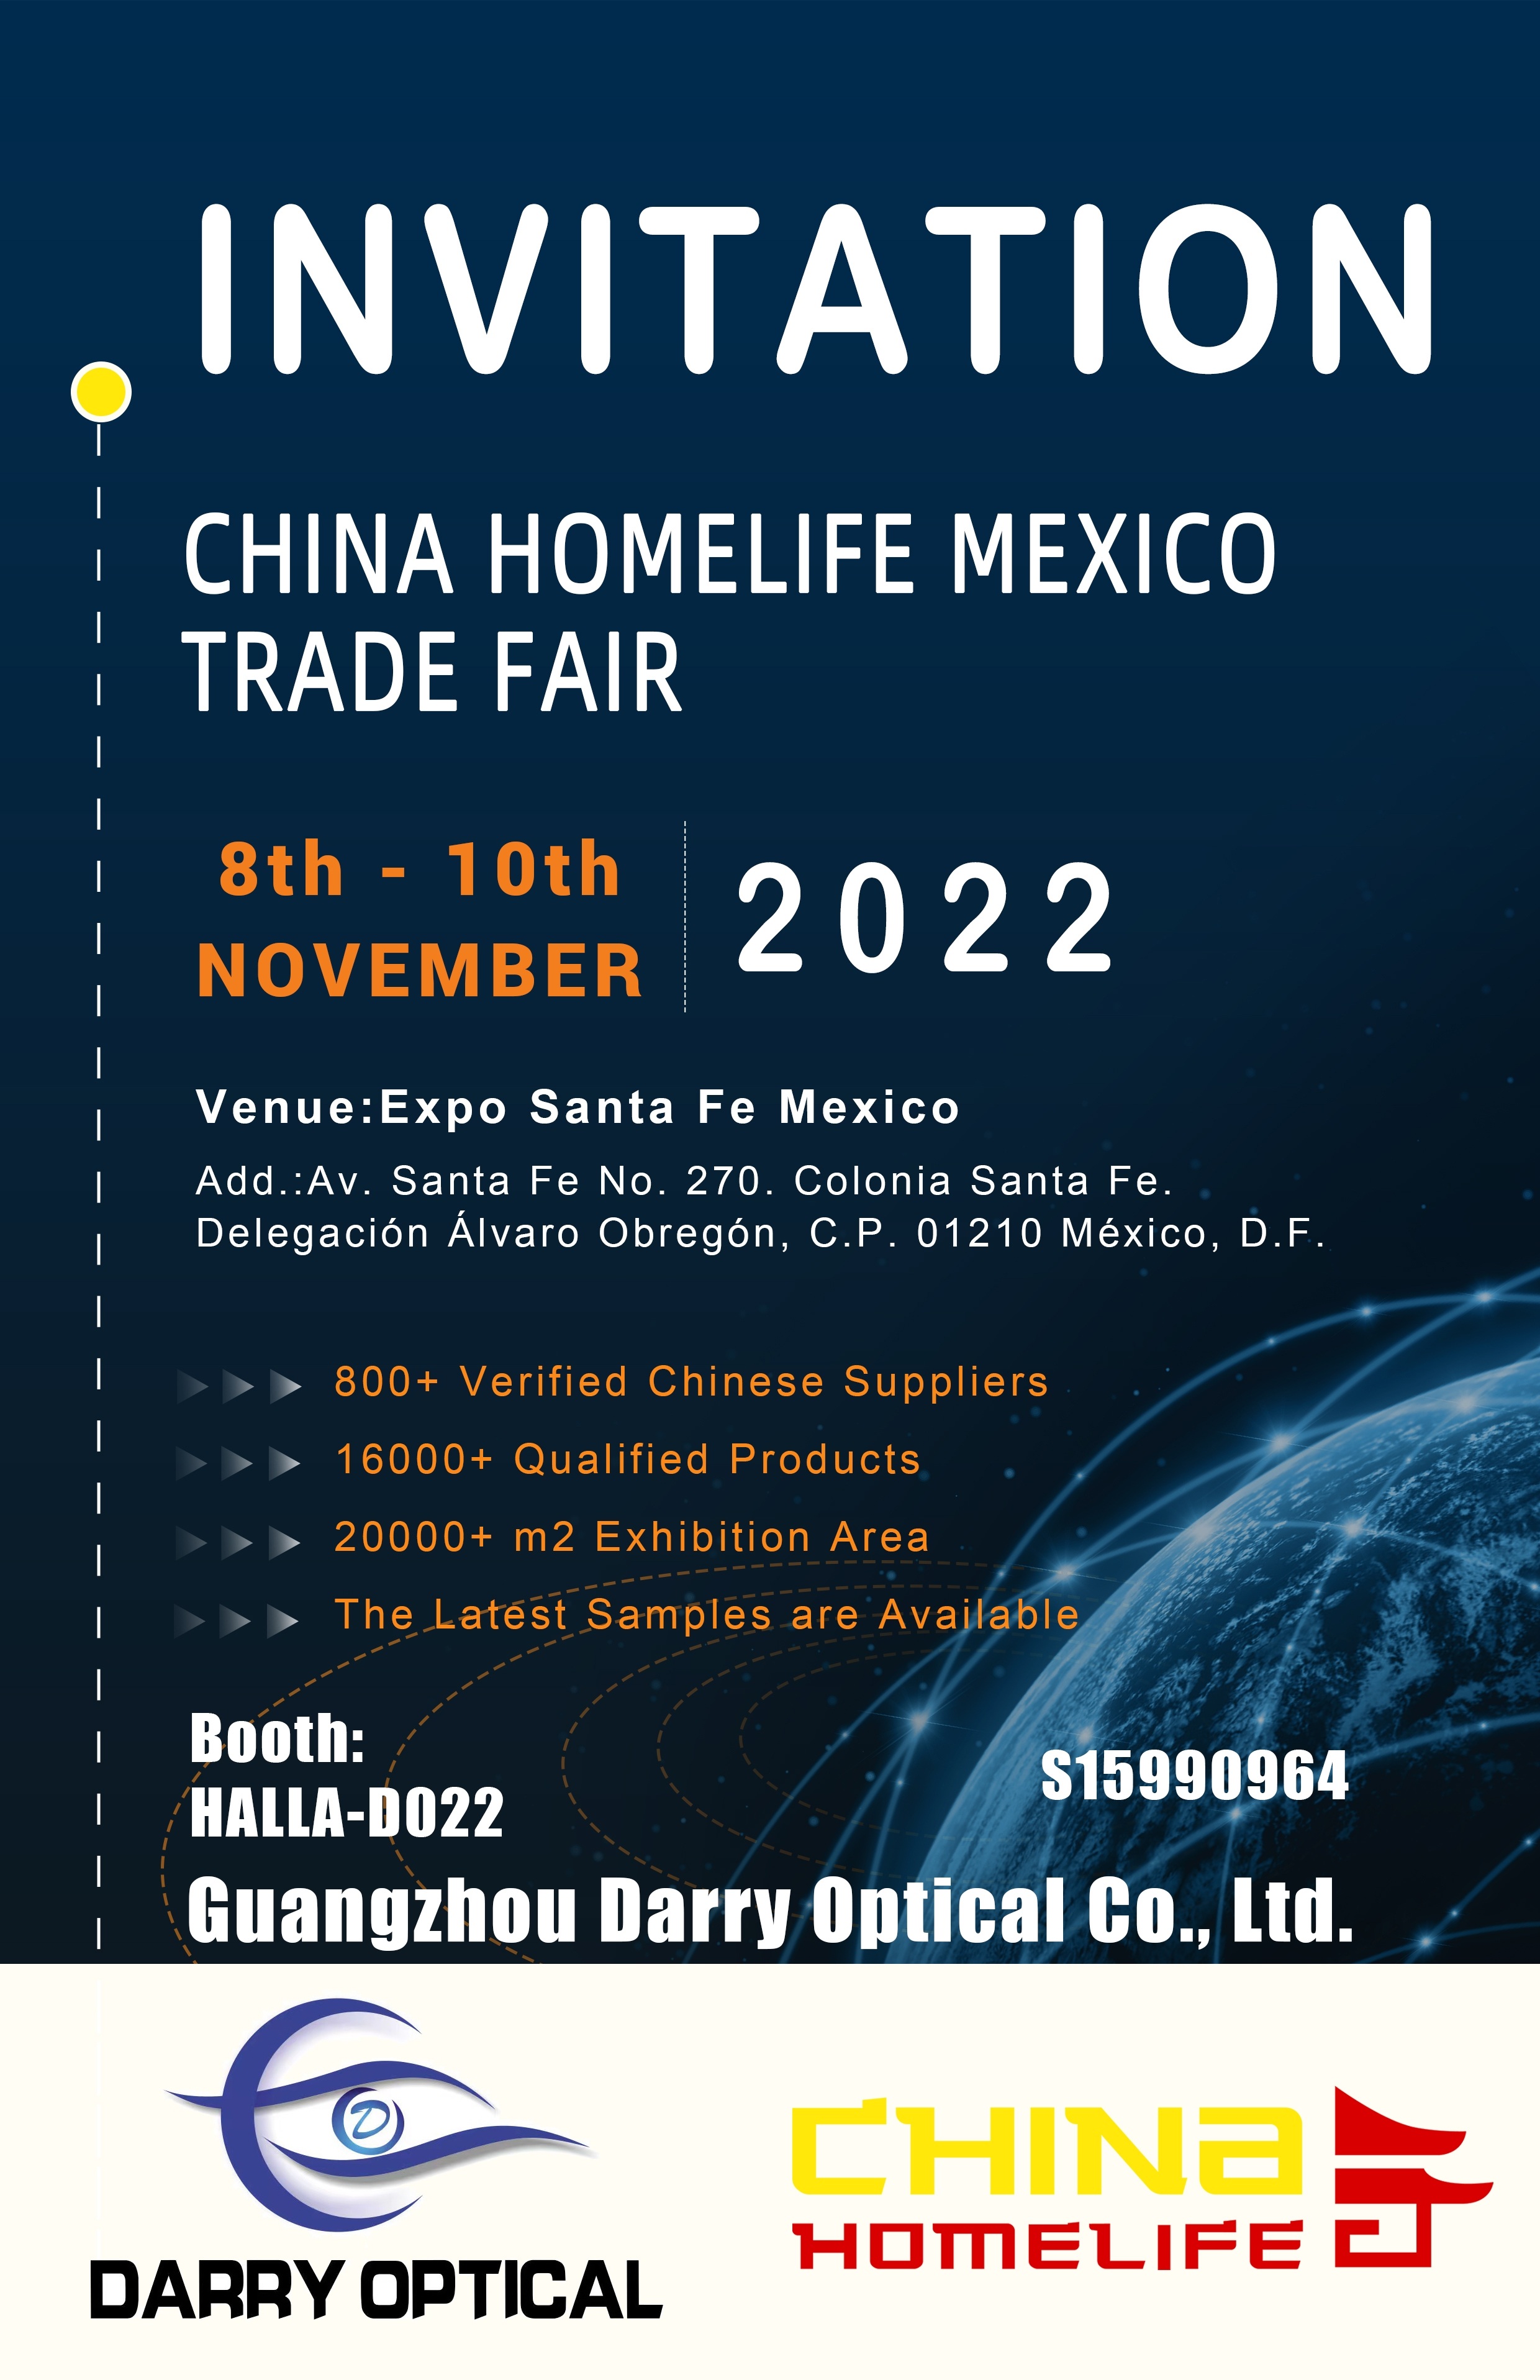 دعوة التجارة العادلة في الصين السادسة (المكسيك)